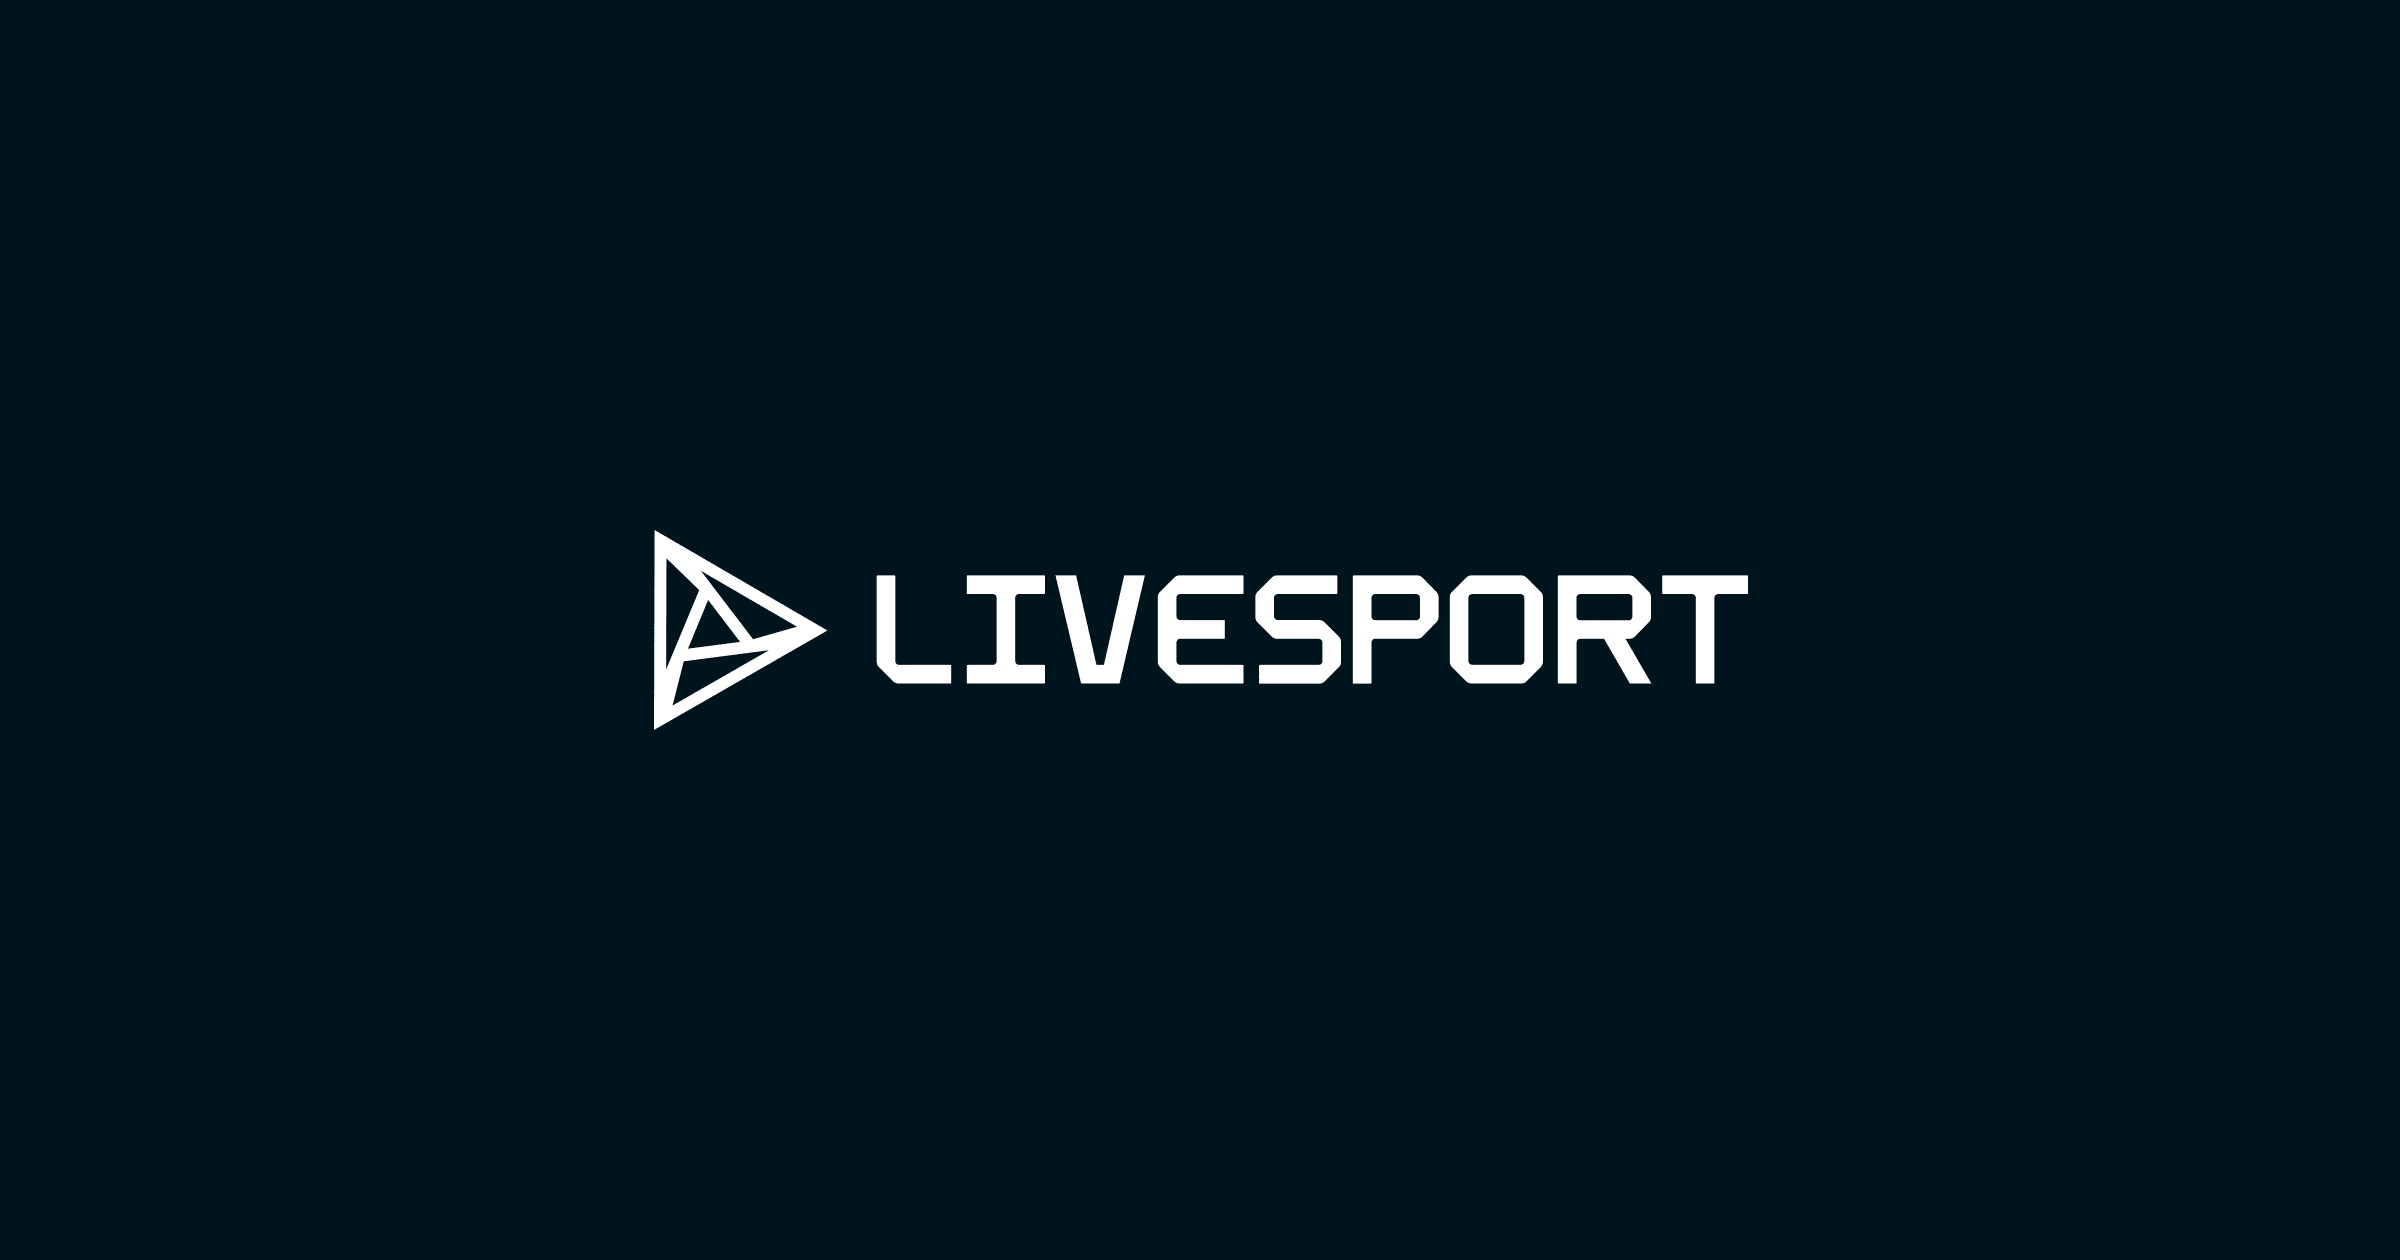 테니스: ATP 호주오픈 실시간 -결과, 일정, 대진표 - Livesport.com